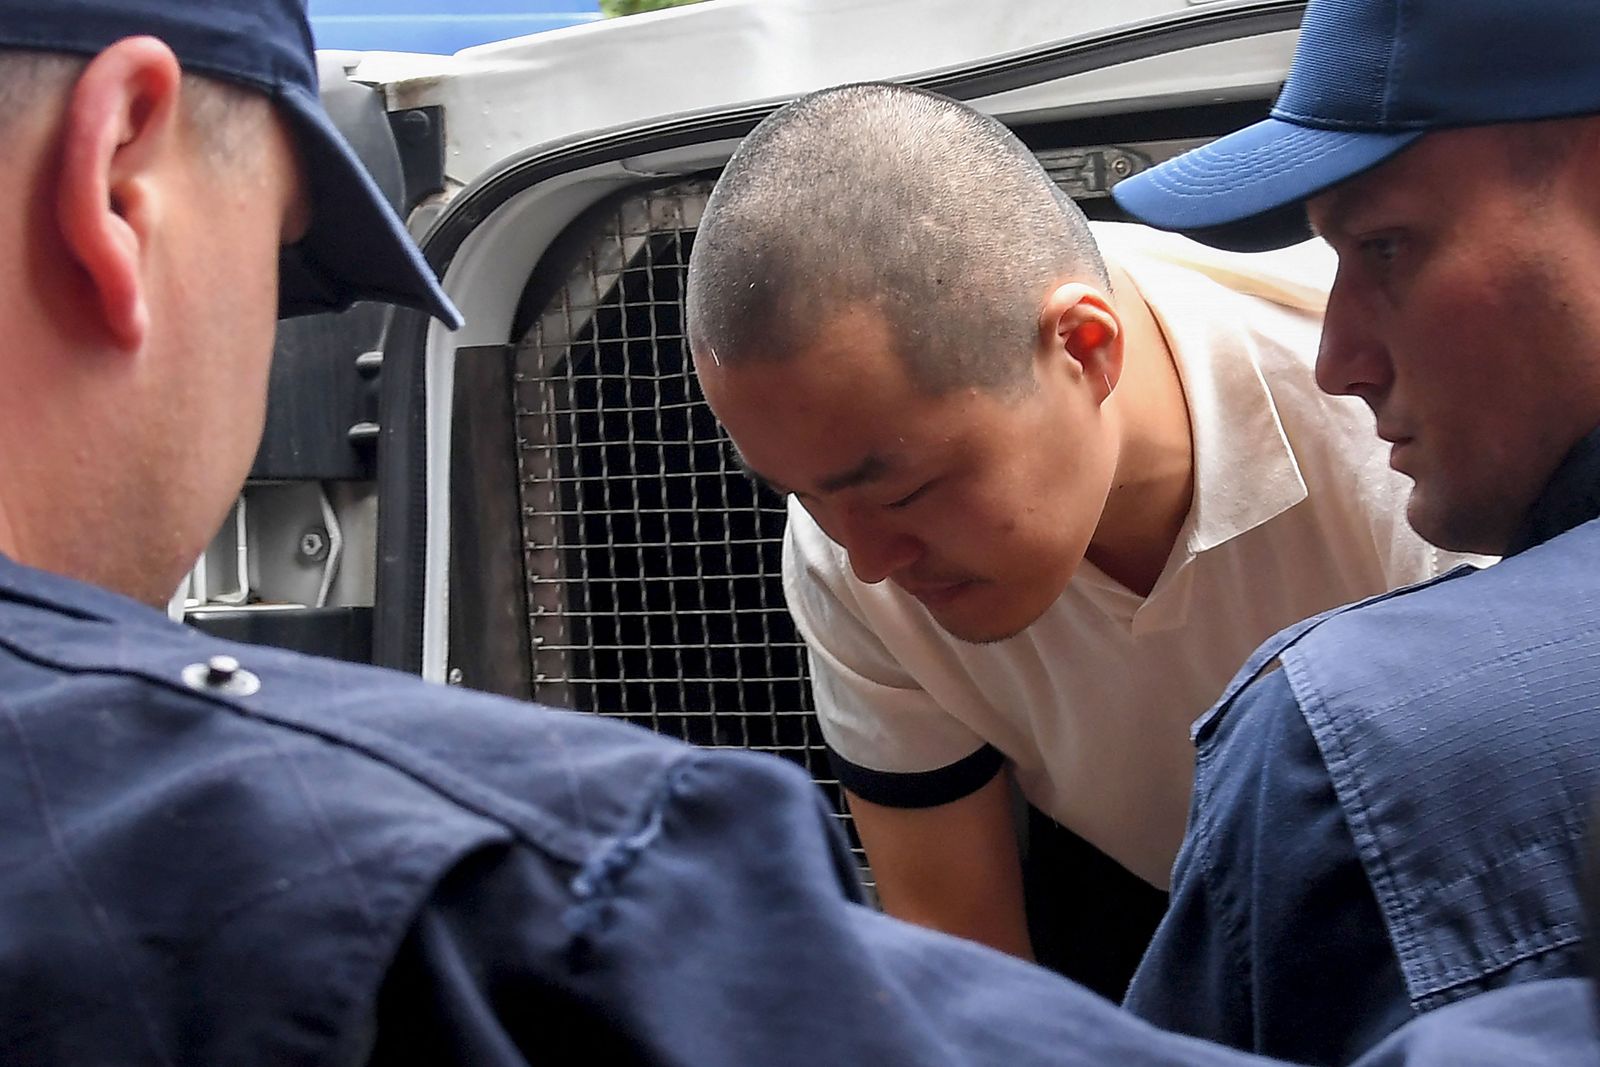 إطلاق سراح قطب التشفير الهارب دو كوون في انتظار تسليمه لأميركا أو كوريا